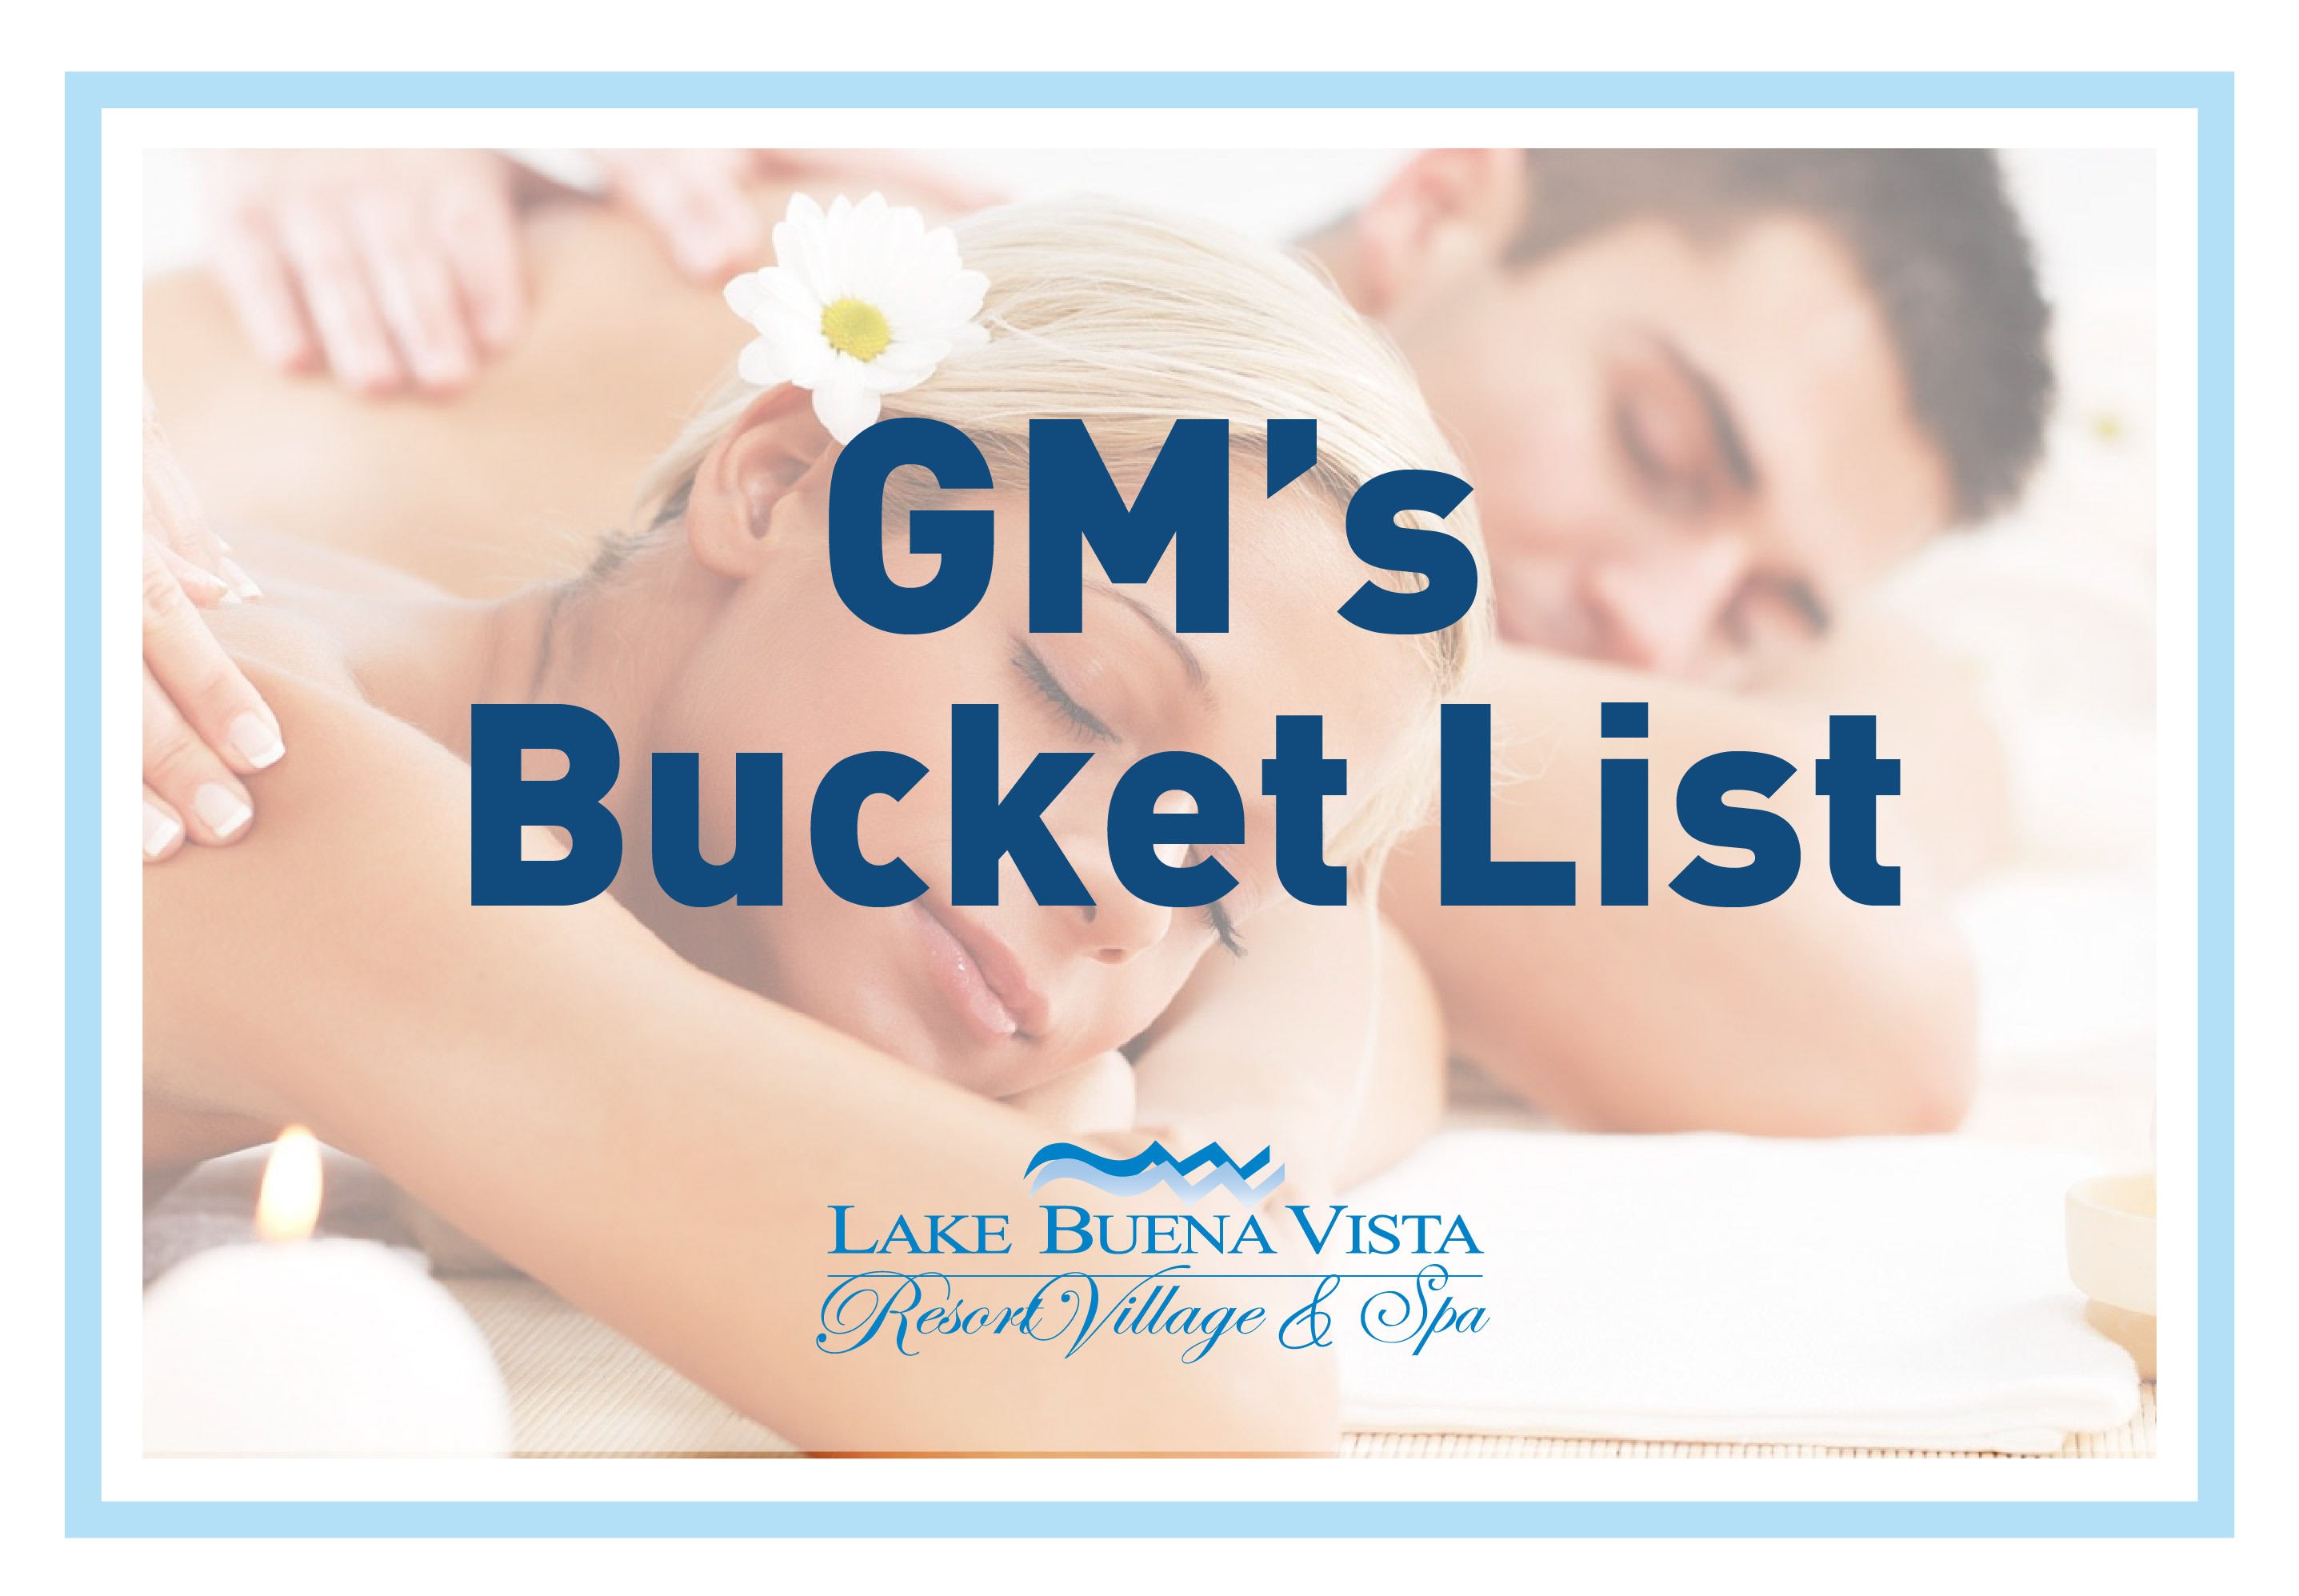 Lake Buena Vista Resort Village & Spa - GM's Bucket List